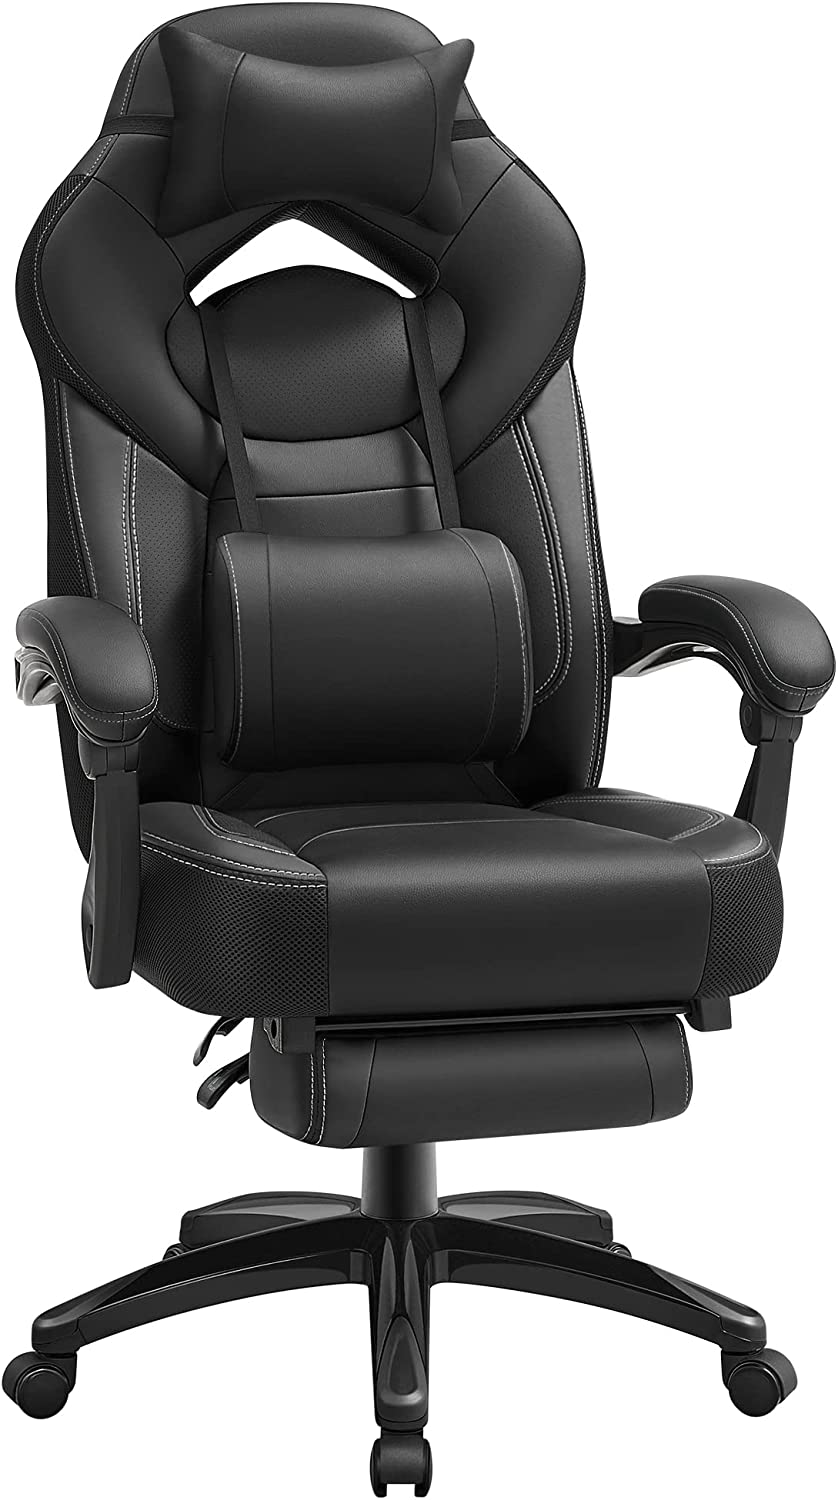 Chaise de gamer ergonomique avec appui-têtes réglables, support lombaire et repose-pieds télescopique SONGMICS